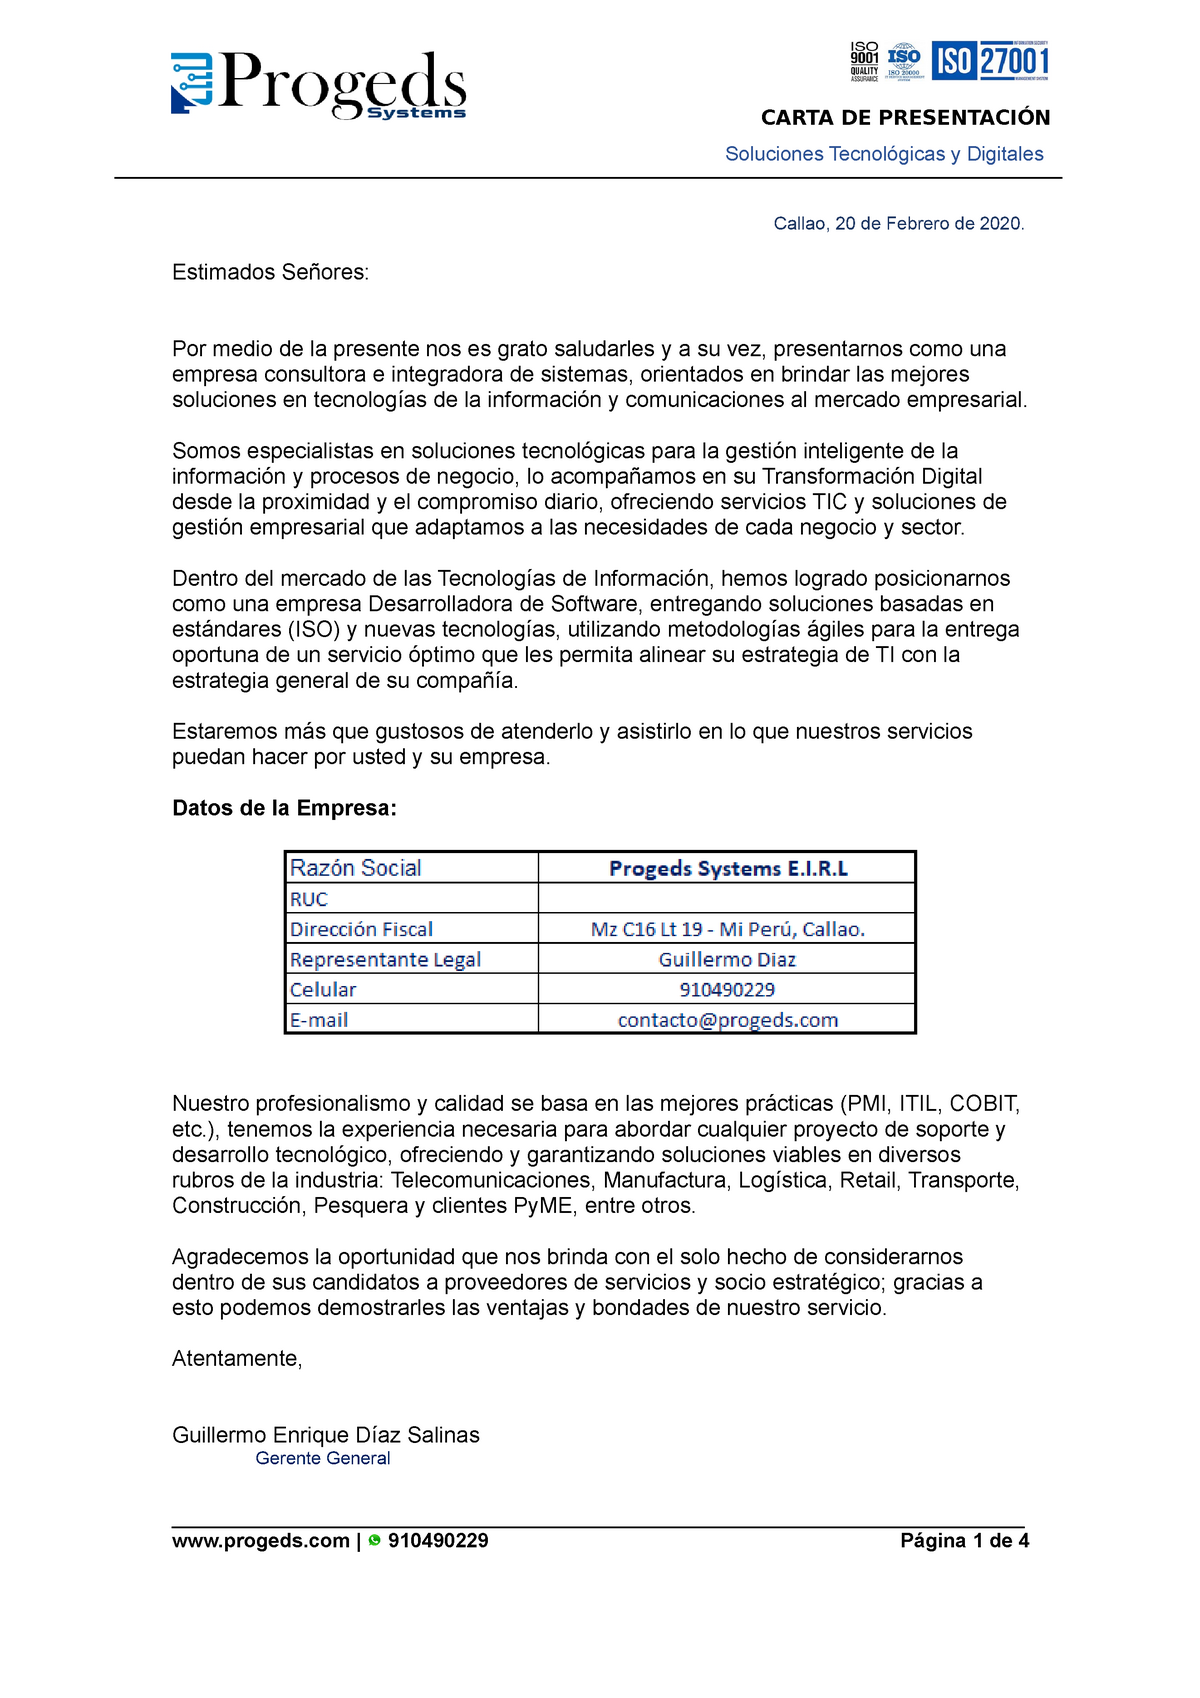 Carta DE Presentacion - Modelo - Soluciones Tecnológicas y Digitales  Callao, 20 de Febrero de 2020. - Studocu